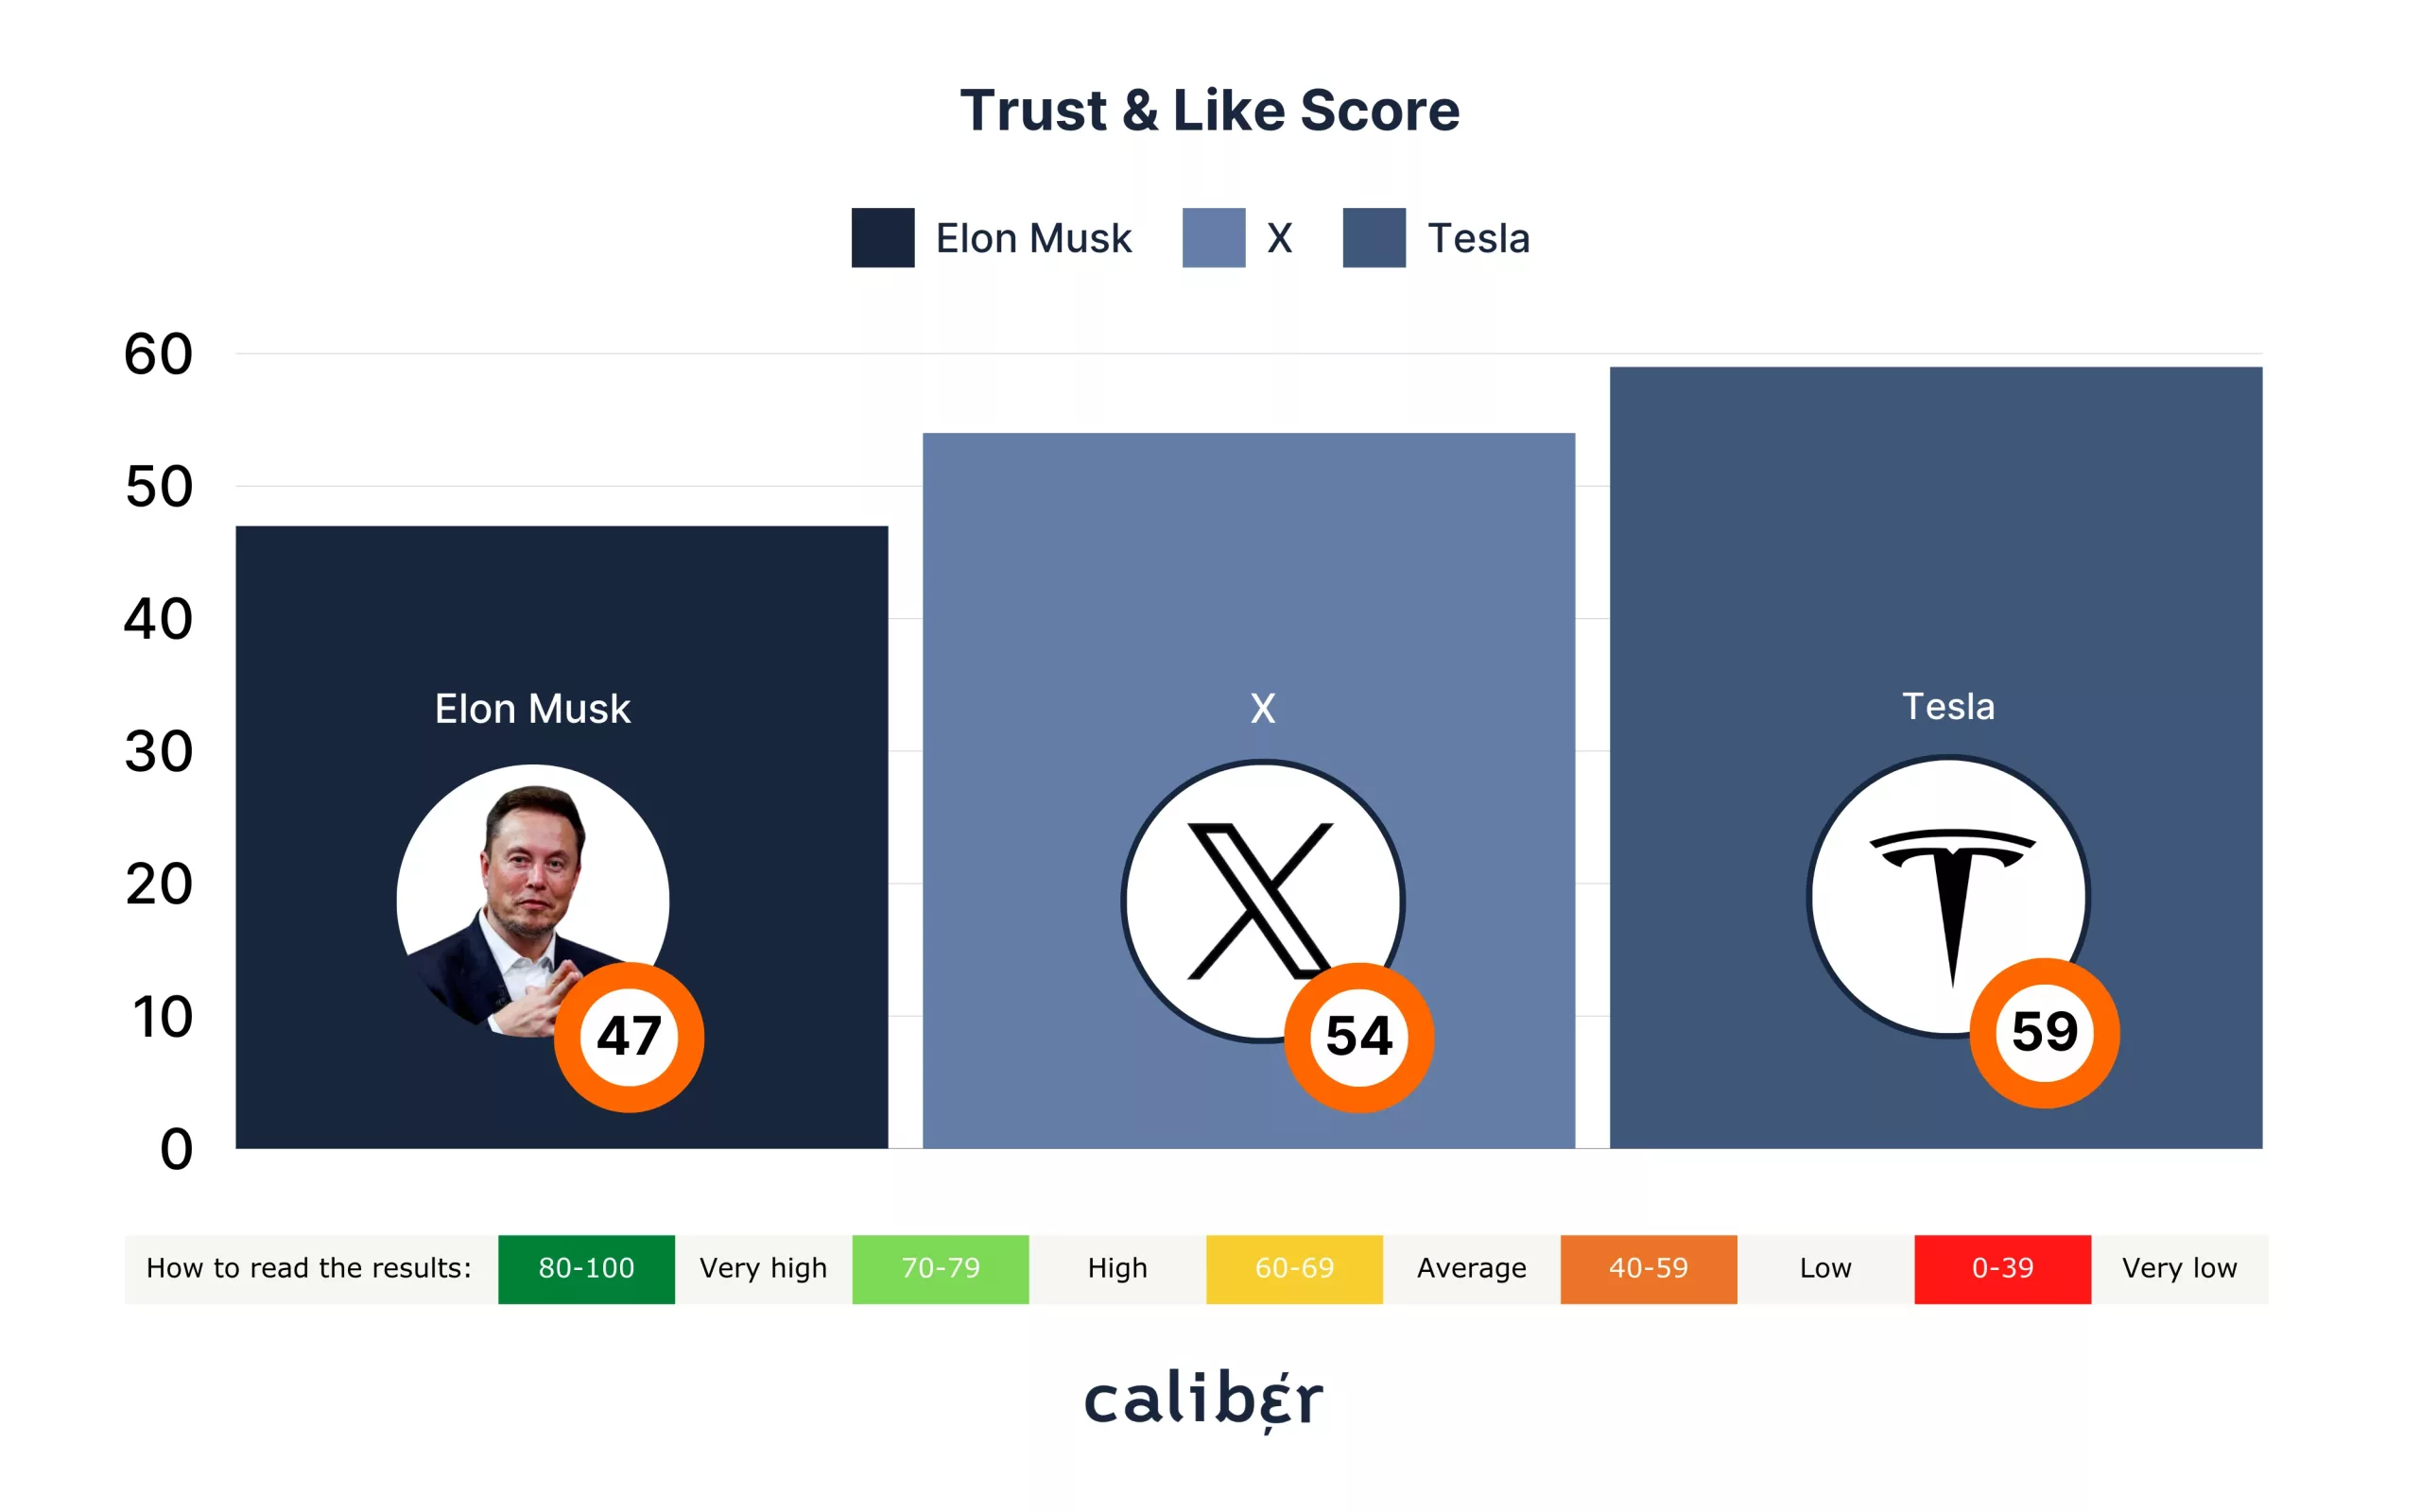 Elon Musk Trust & Like Score